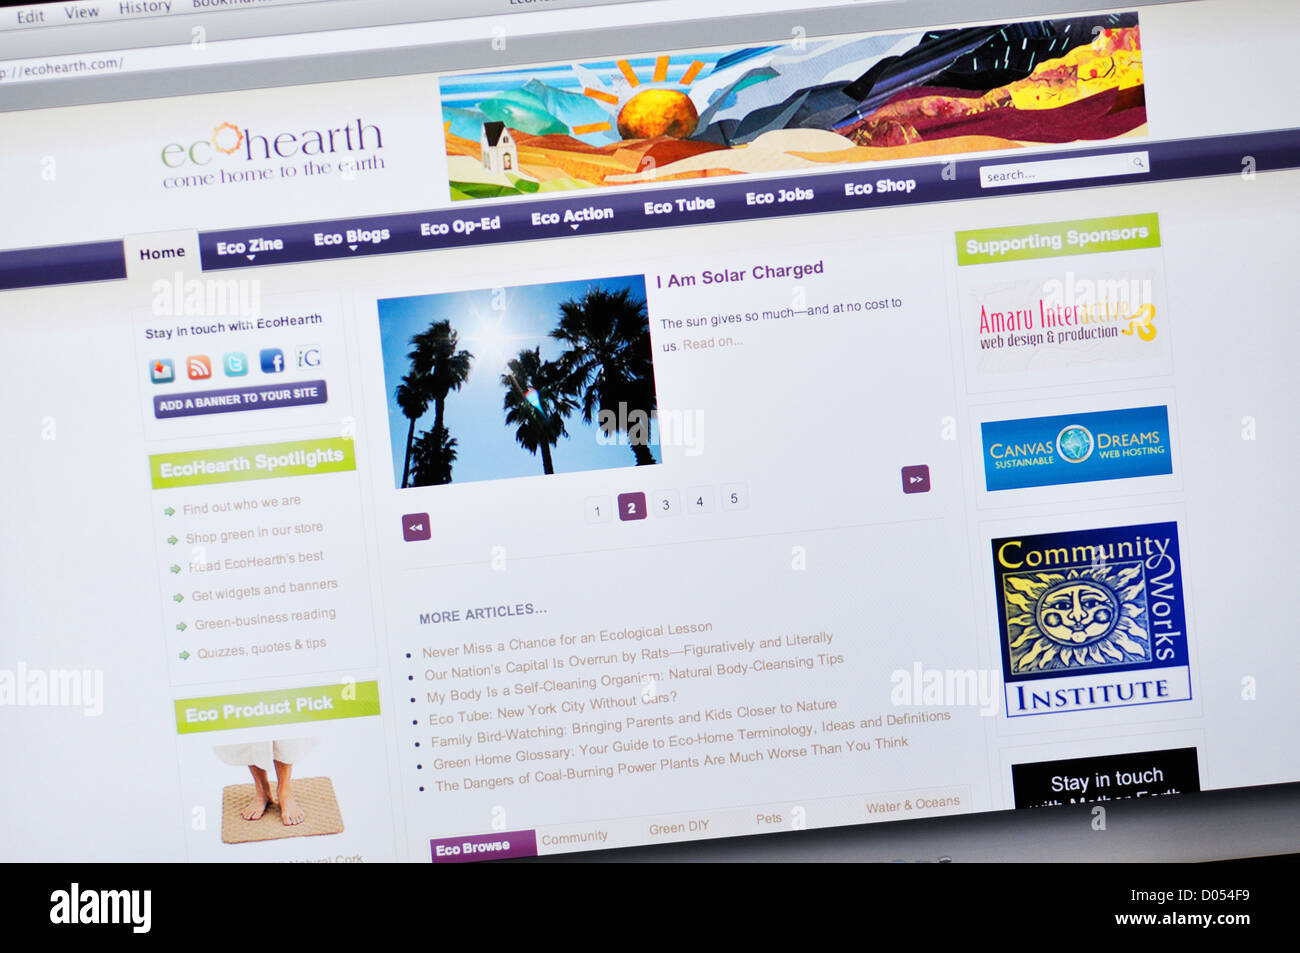 EcoHearth Webseite - Umwelt Websites für Top-grüne Blogs, Ökologie Nachrichten, grüne Arbeitsplätze, umweltfreundliche Produkte und nachhaltiges Leben Stockfoto